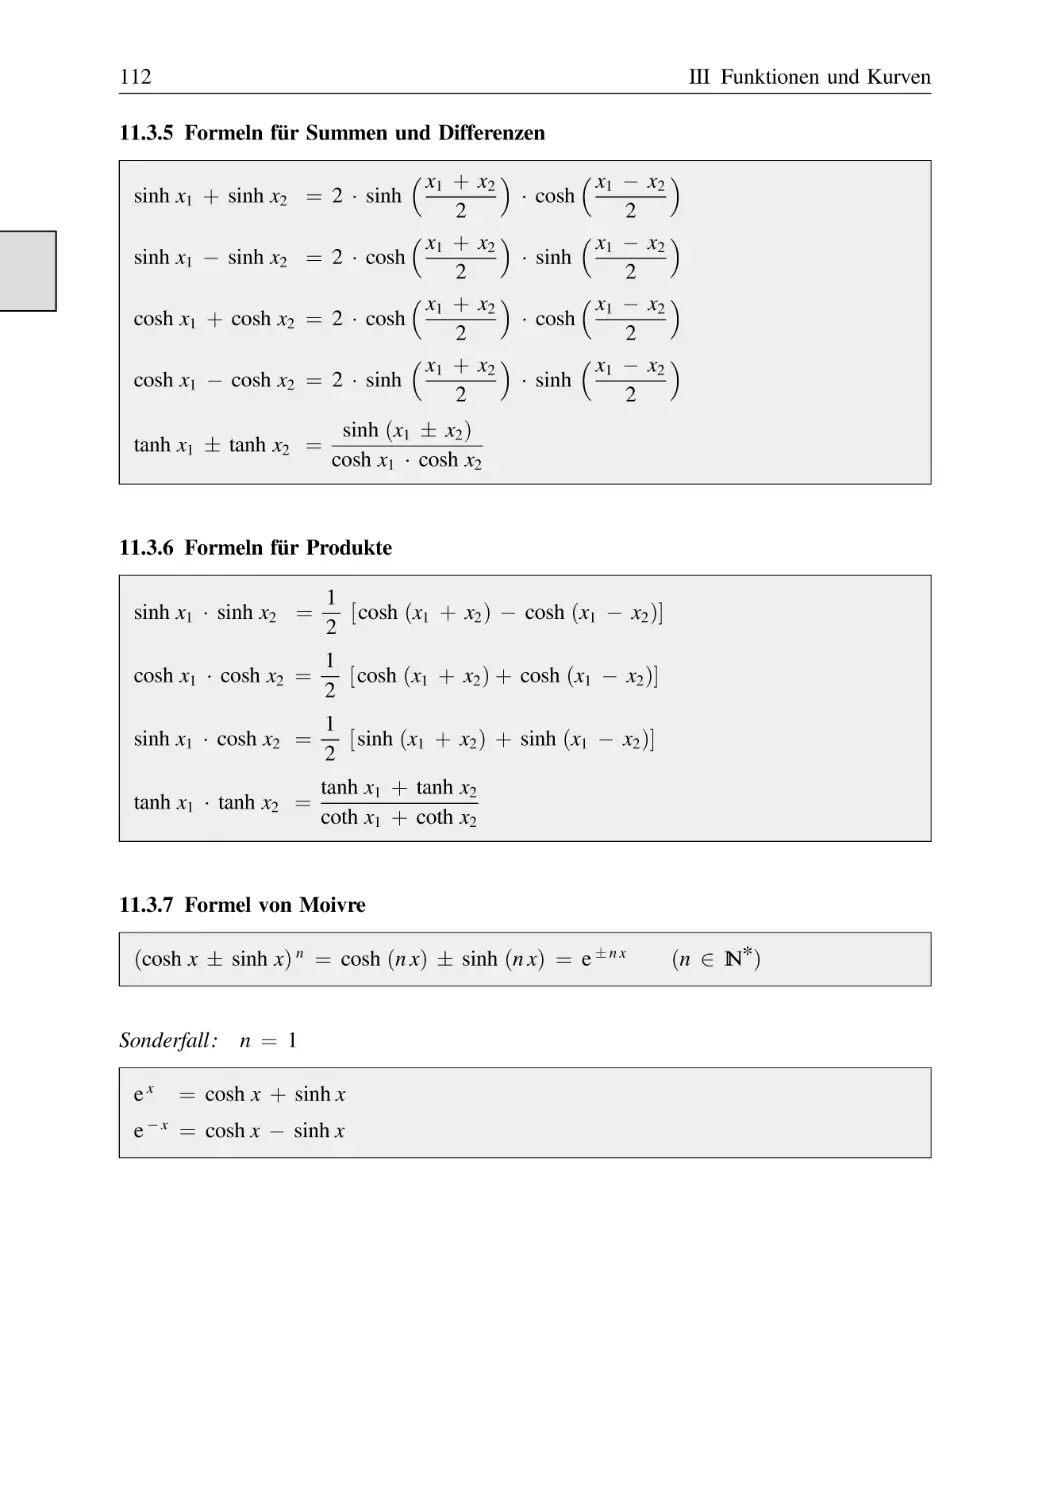 11.3.5 Formeln für Summen und Differenzen
11.3.6 Formeln für Produkte
11.3.7 Formel von Moivre